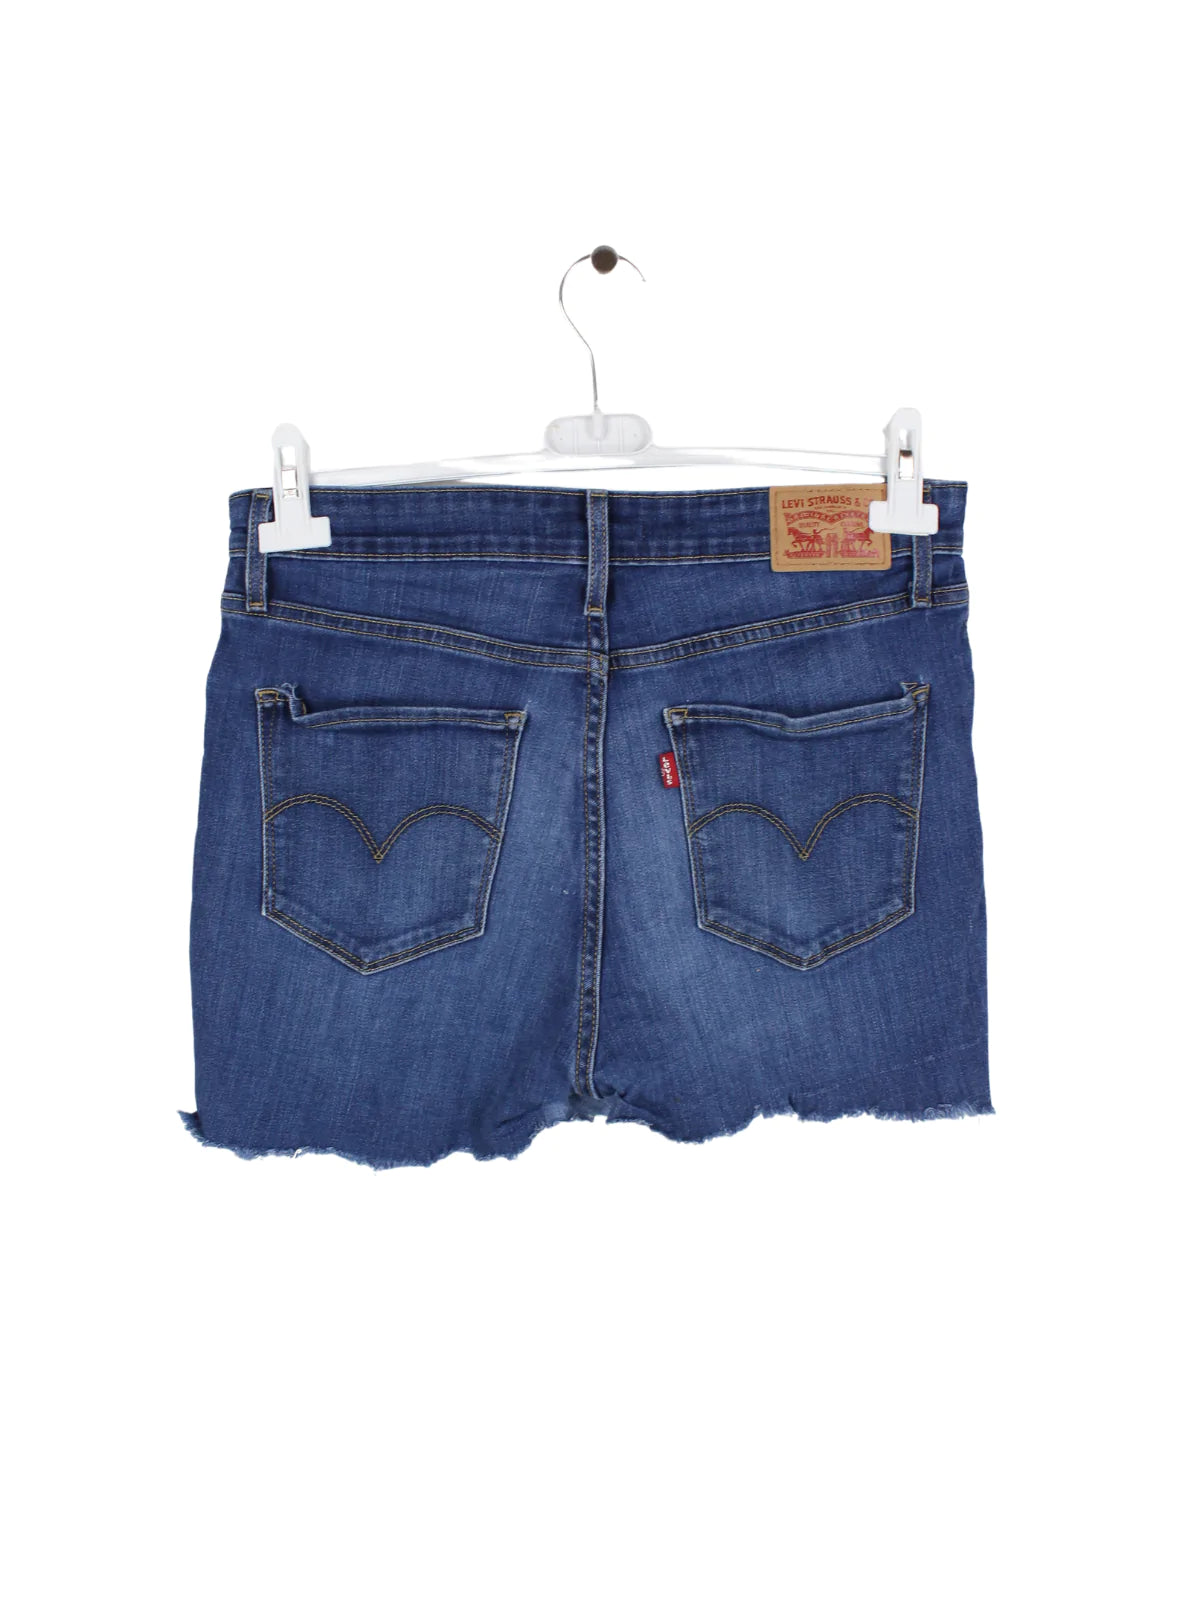 Levis 721 Damen Jeans Shorts Gr. 31